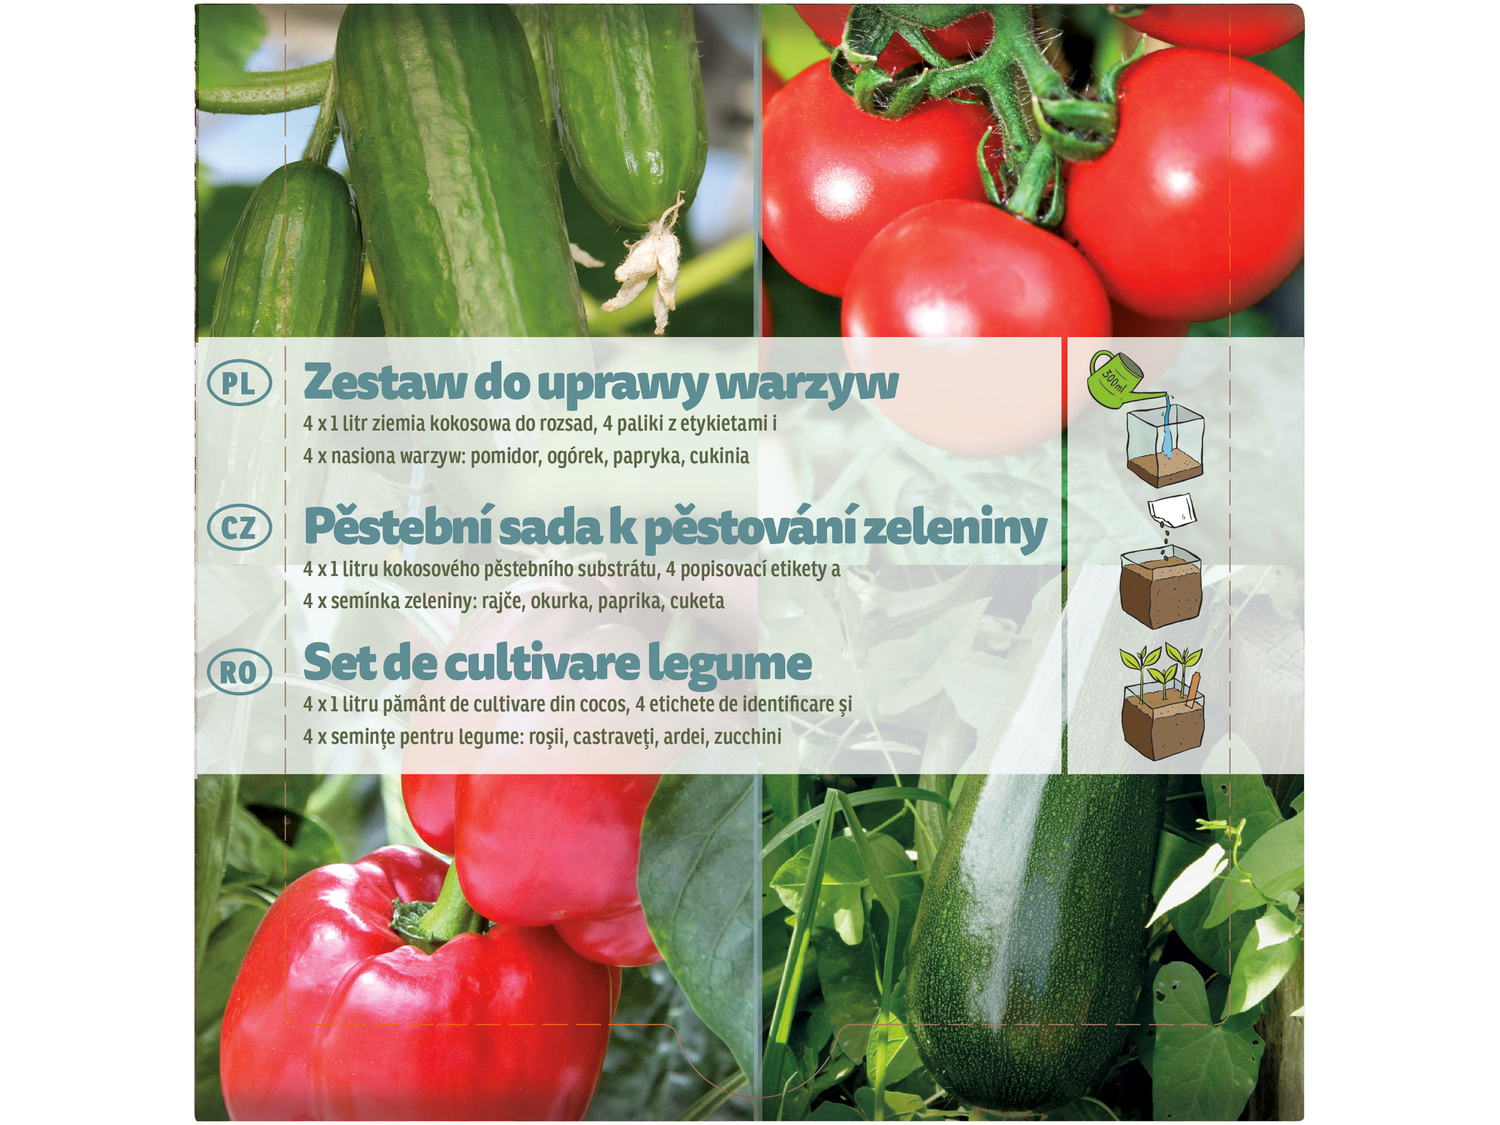 Zestaw do uprawy roślin , cena 7,99 PLN 
3 zestawy do wyboru 
- do wyboru zestaw ...